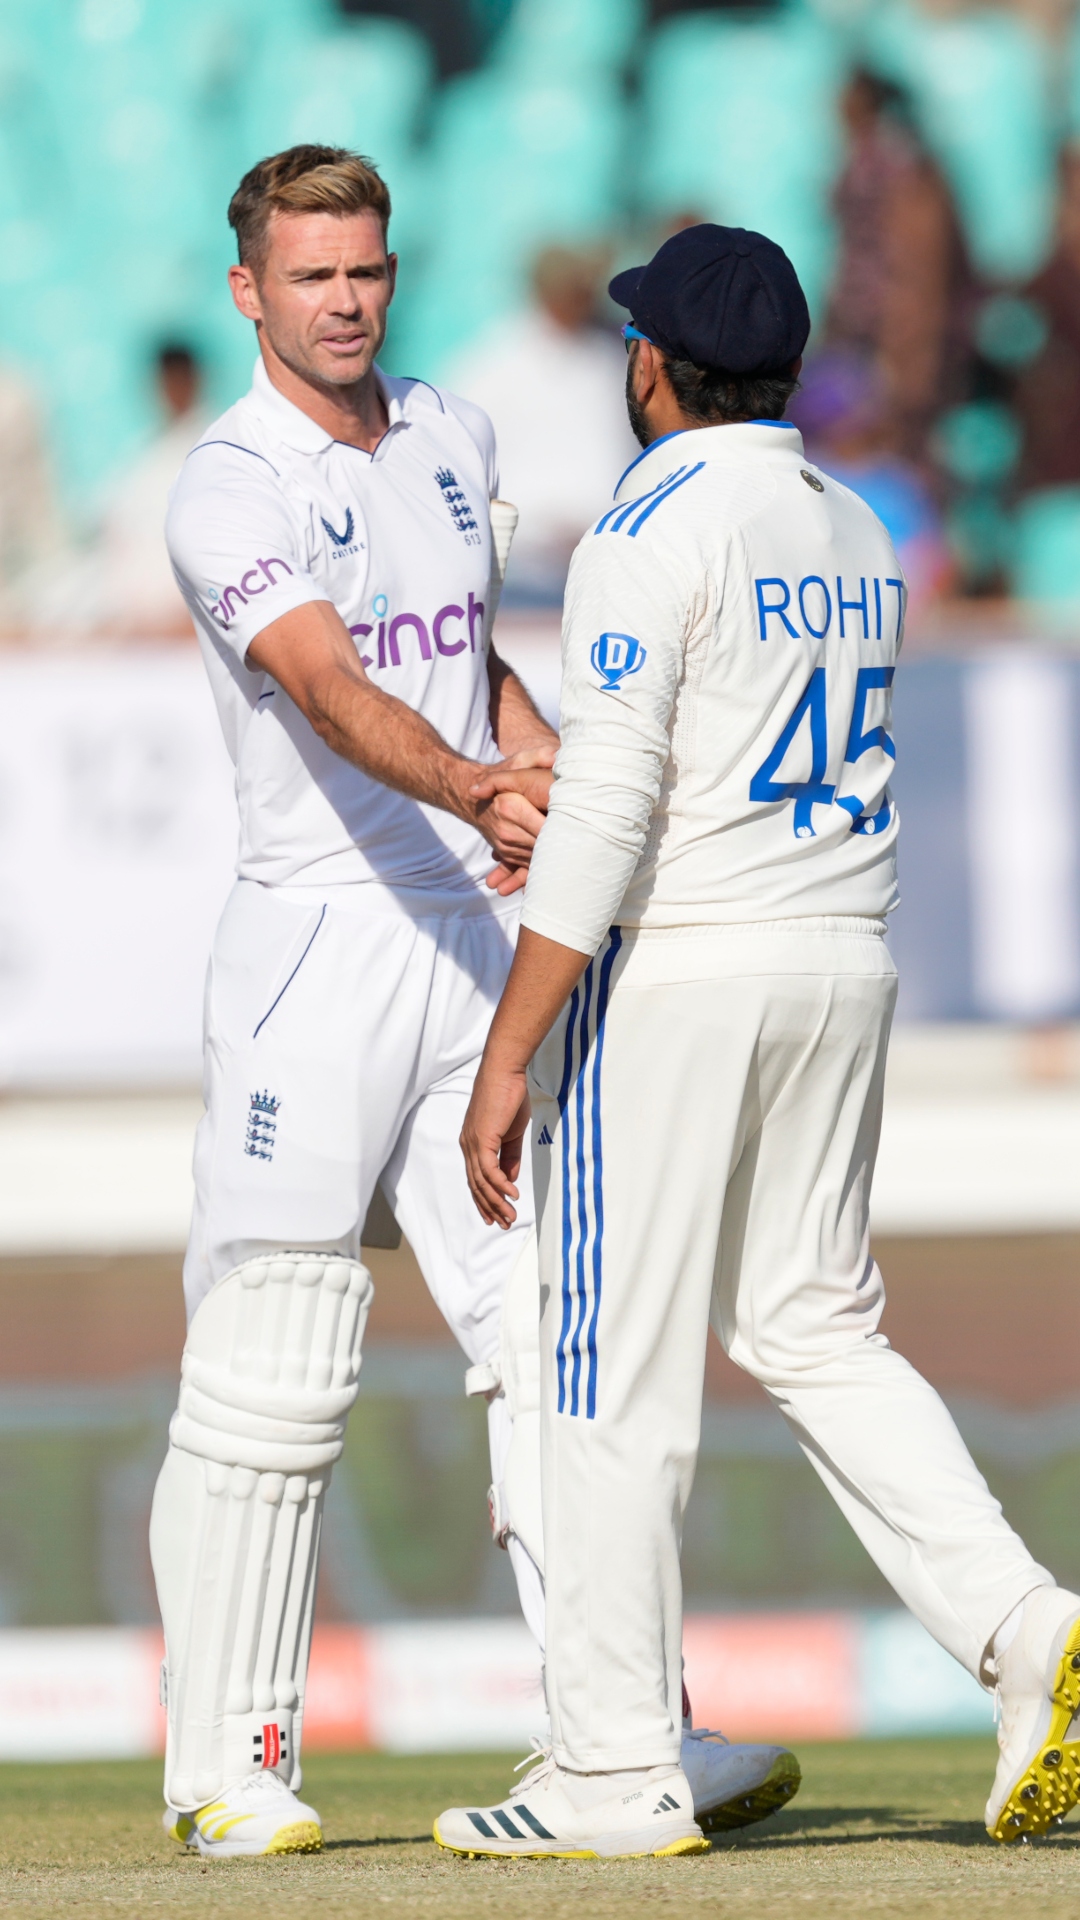 जेम्स एंडरसन के खिलाफ टेस्ट क्रिकेट में सबसे ज्यादा छक्के जड़ने वाले भारतीय खिलाड़ियों की लिस्ट